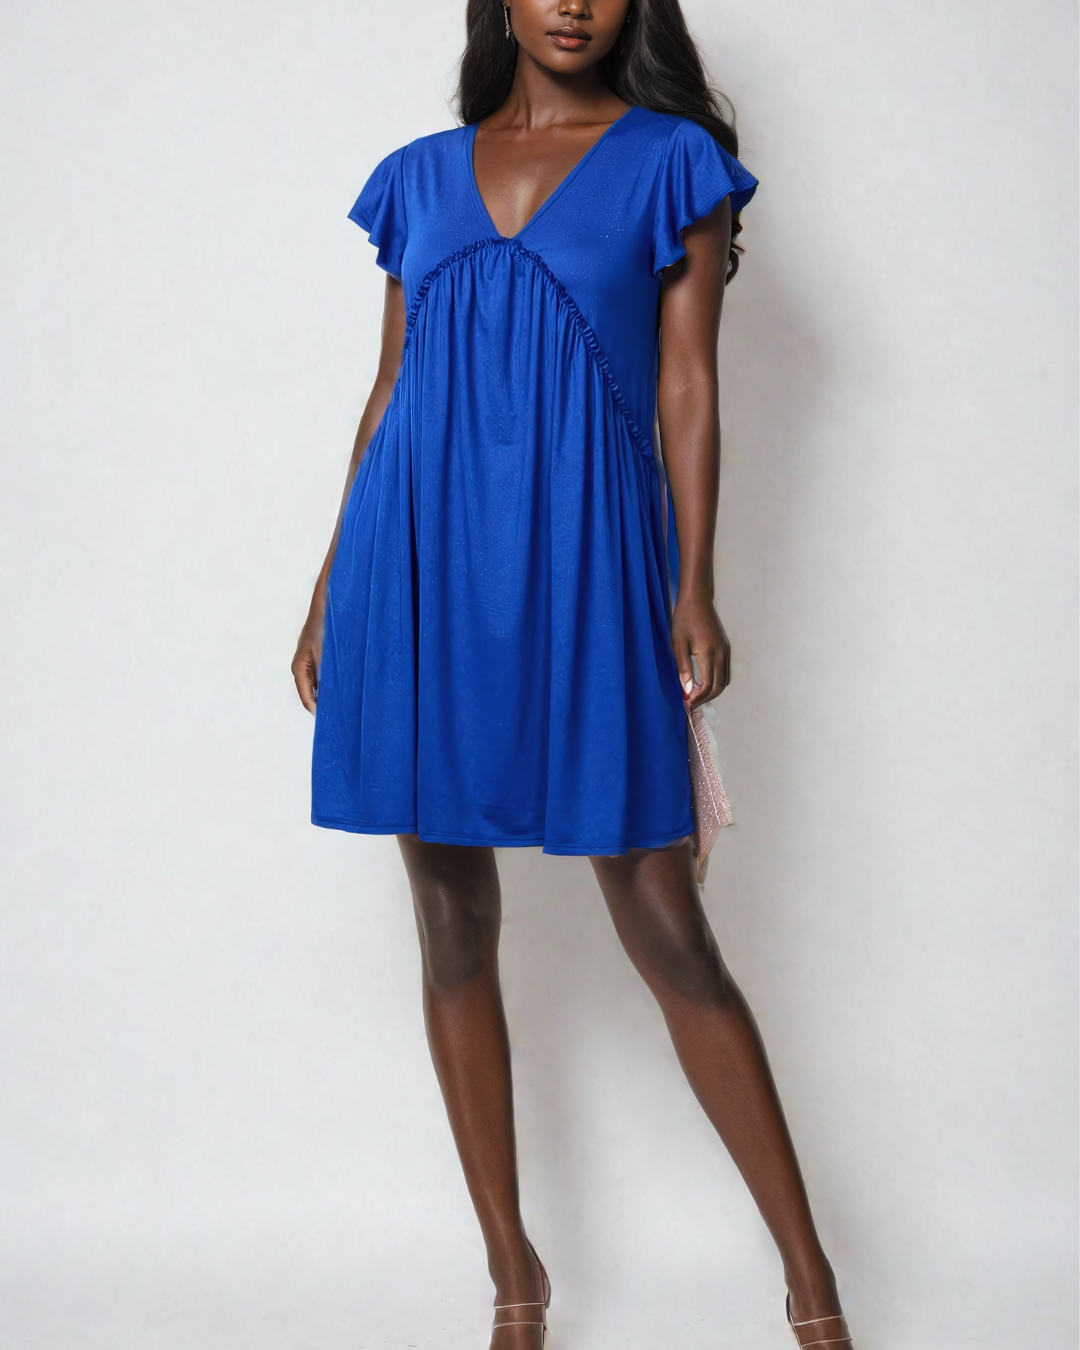 Whispering Breeze Tunic Mini Dress - Royal Blue